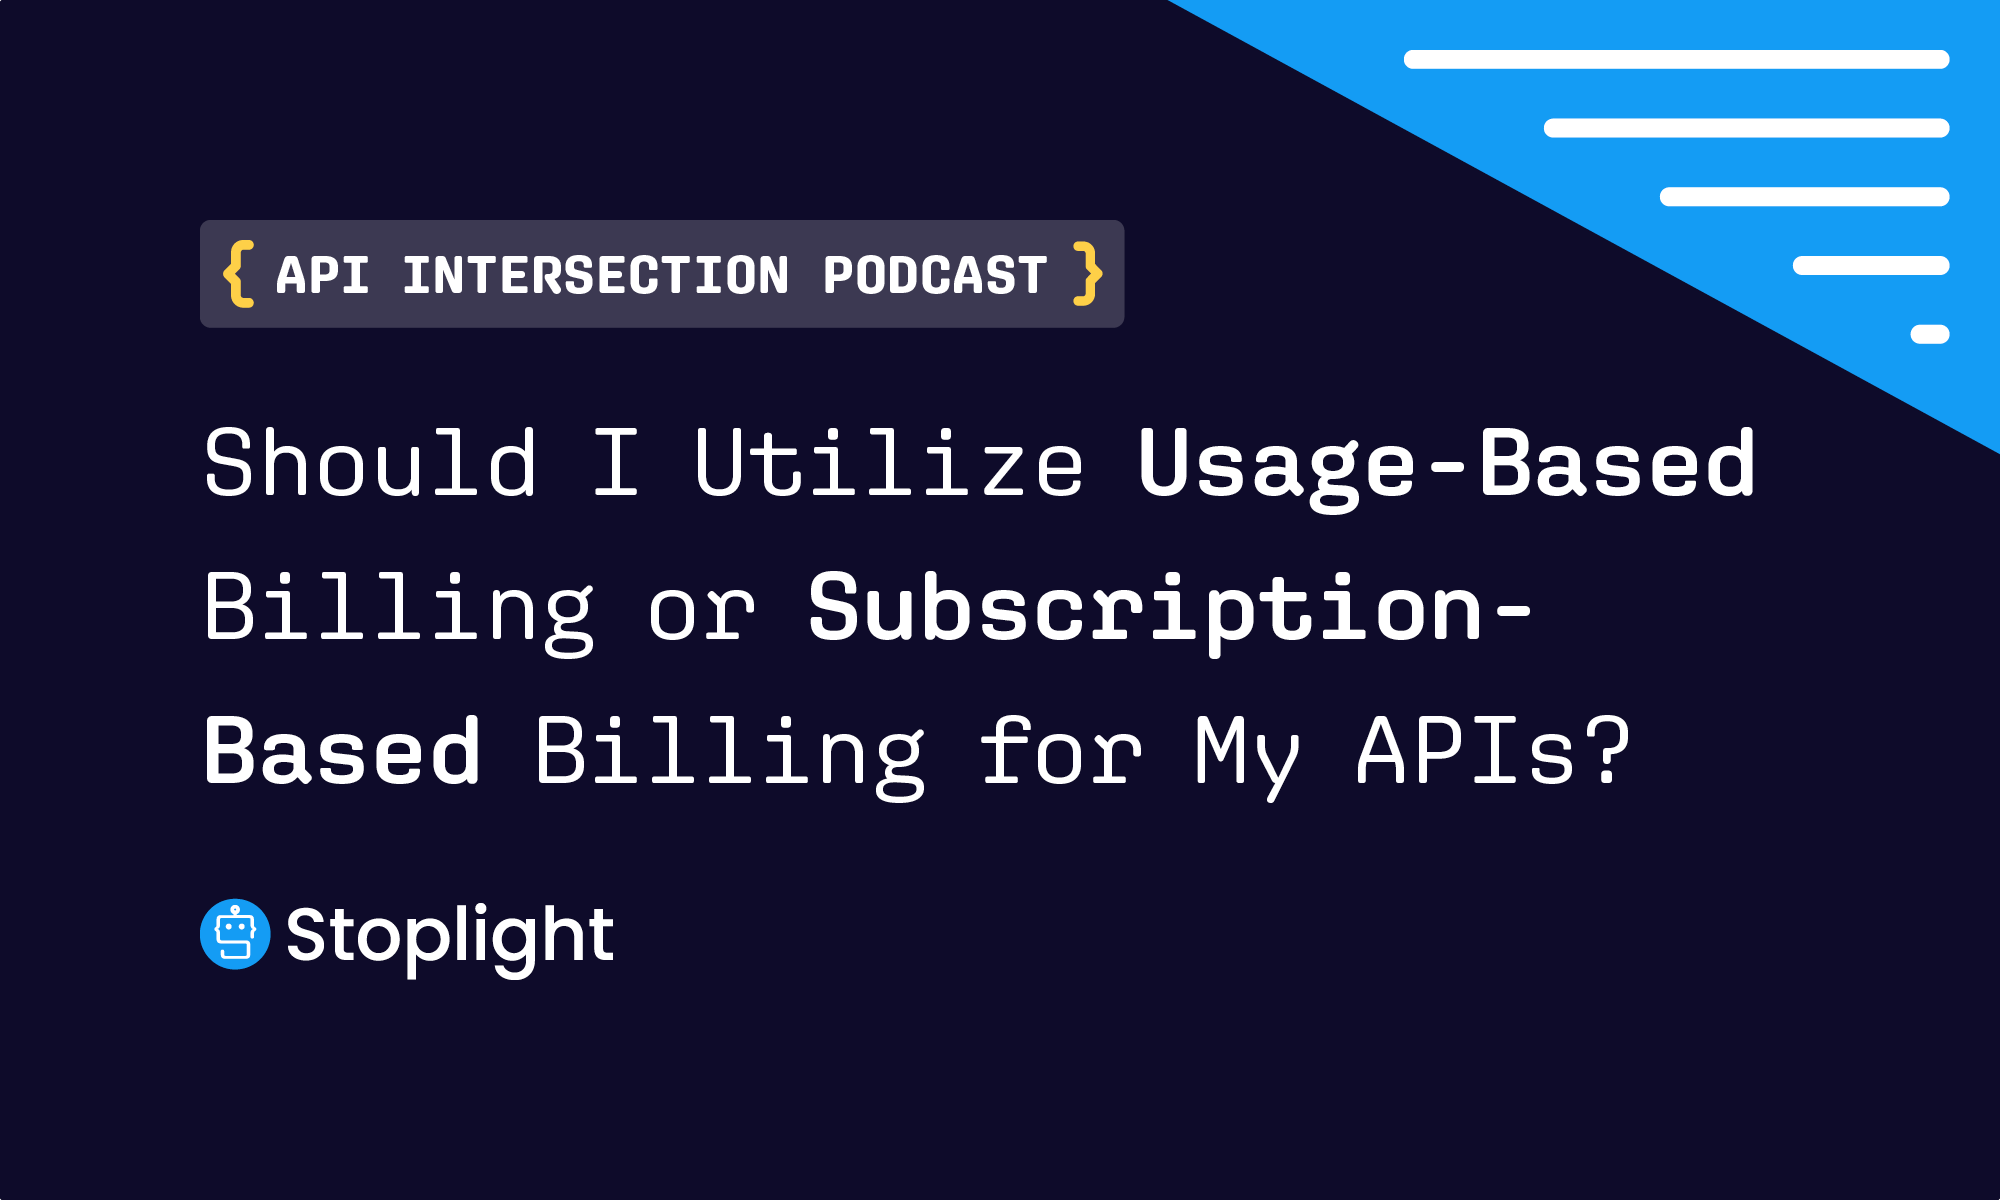 Should I Utilize Usage-Based Billing or Subscription-Based For My APIs?